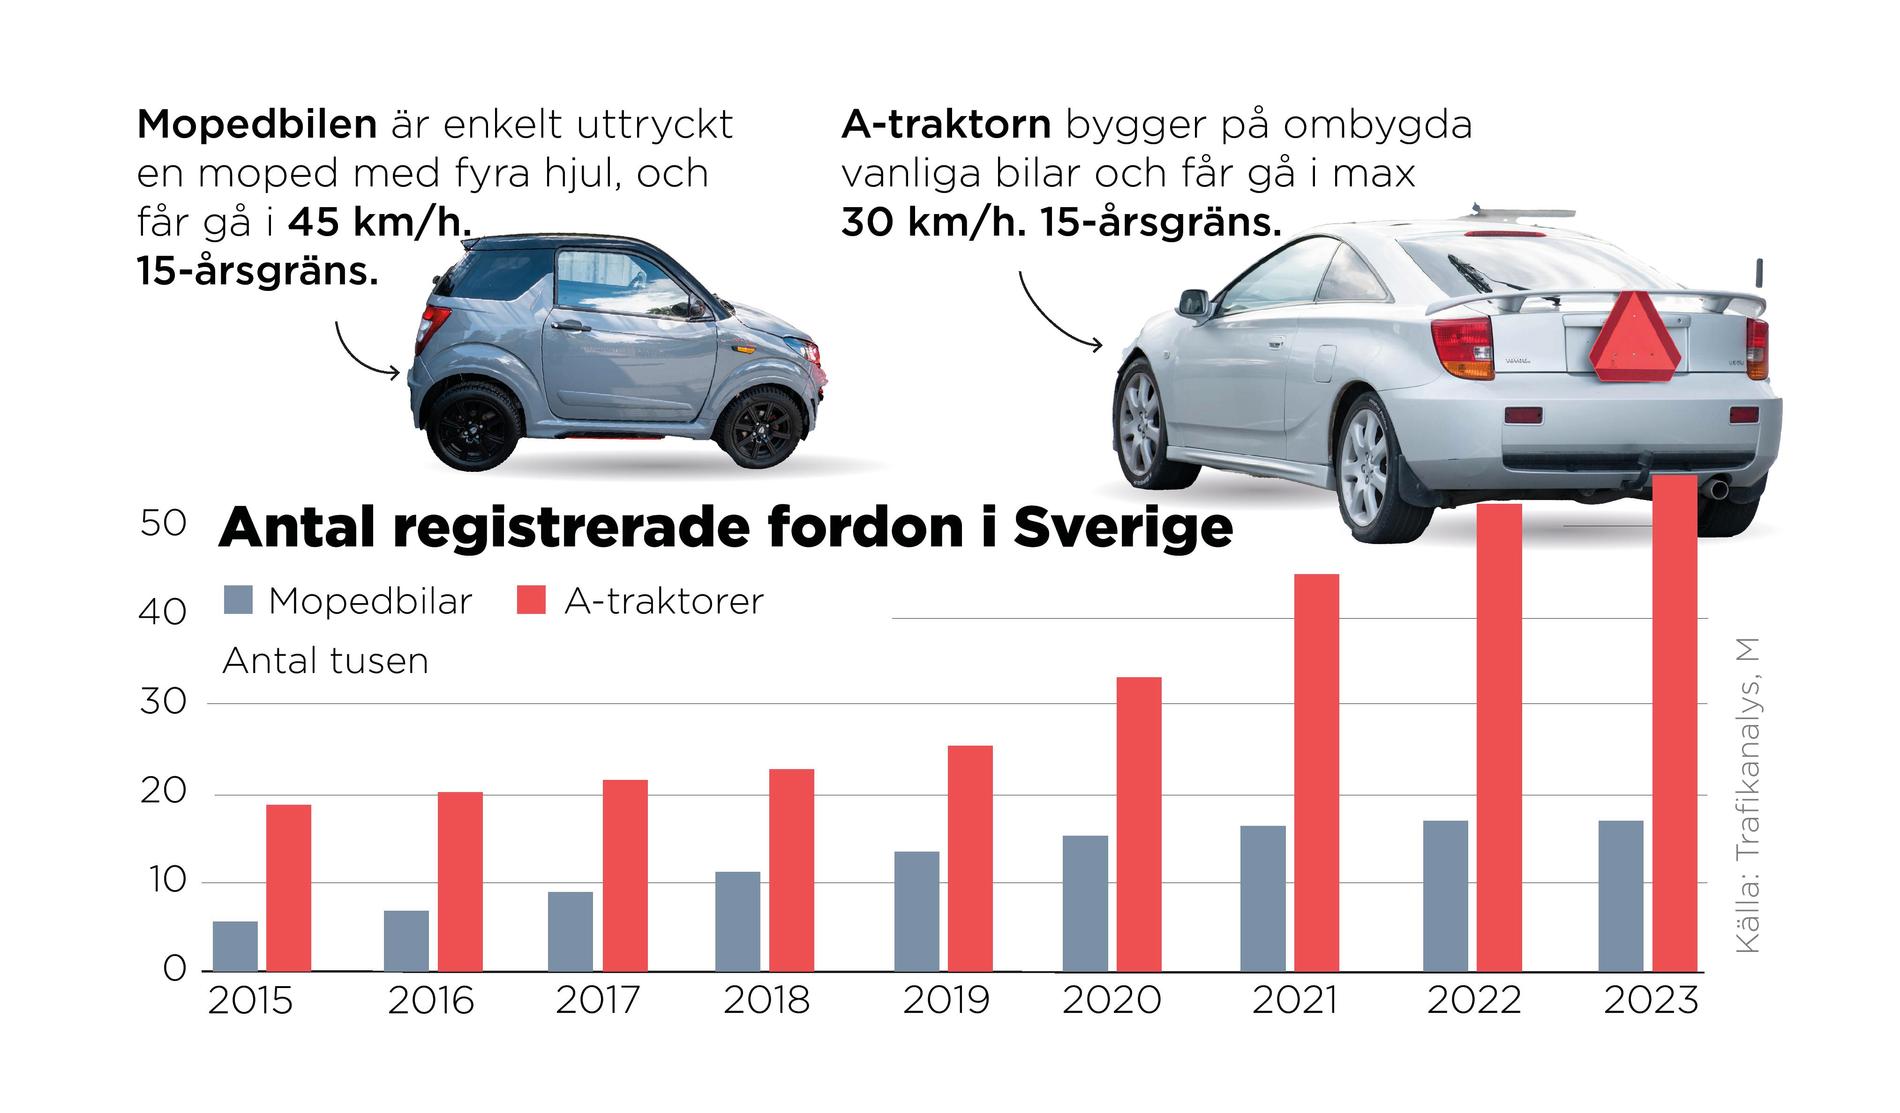 Antal registrerade fordon i Sverige. A-traktorer och Mopedbilar. Hastighetsgränser och åldersgränser.